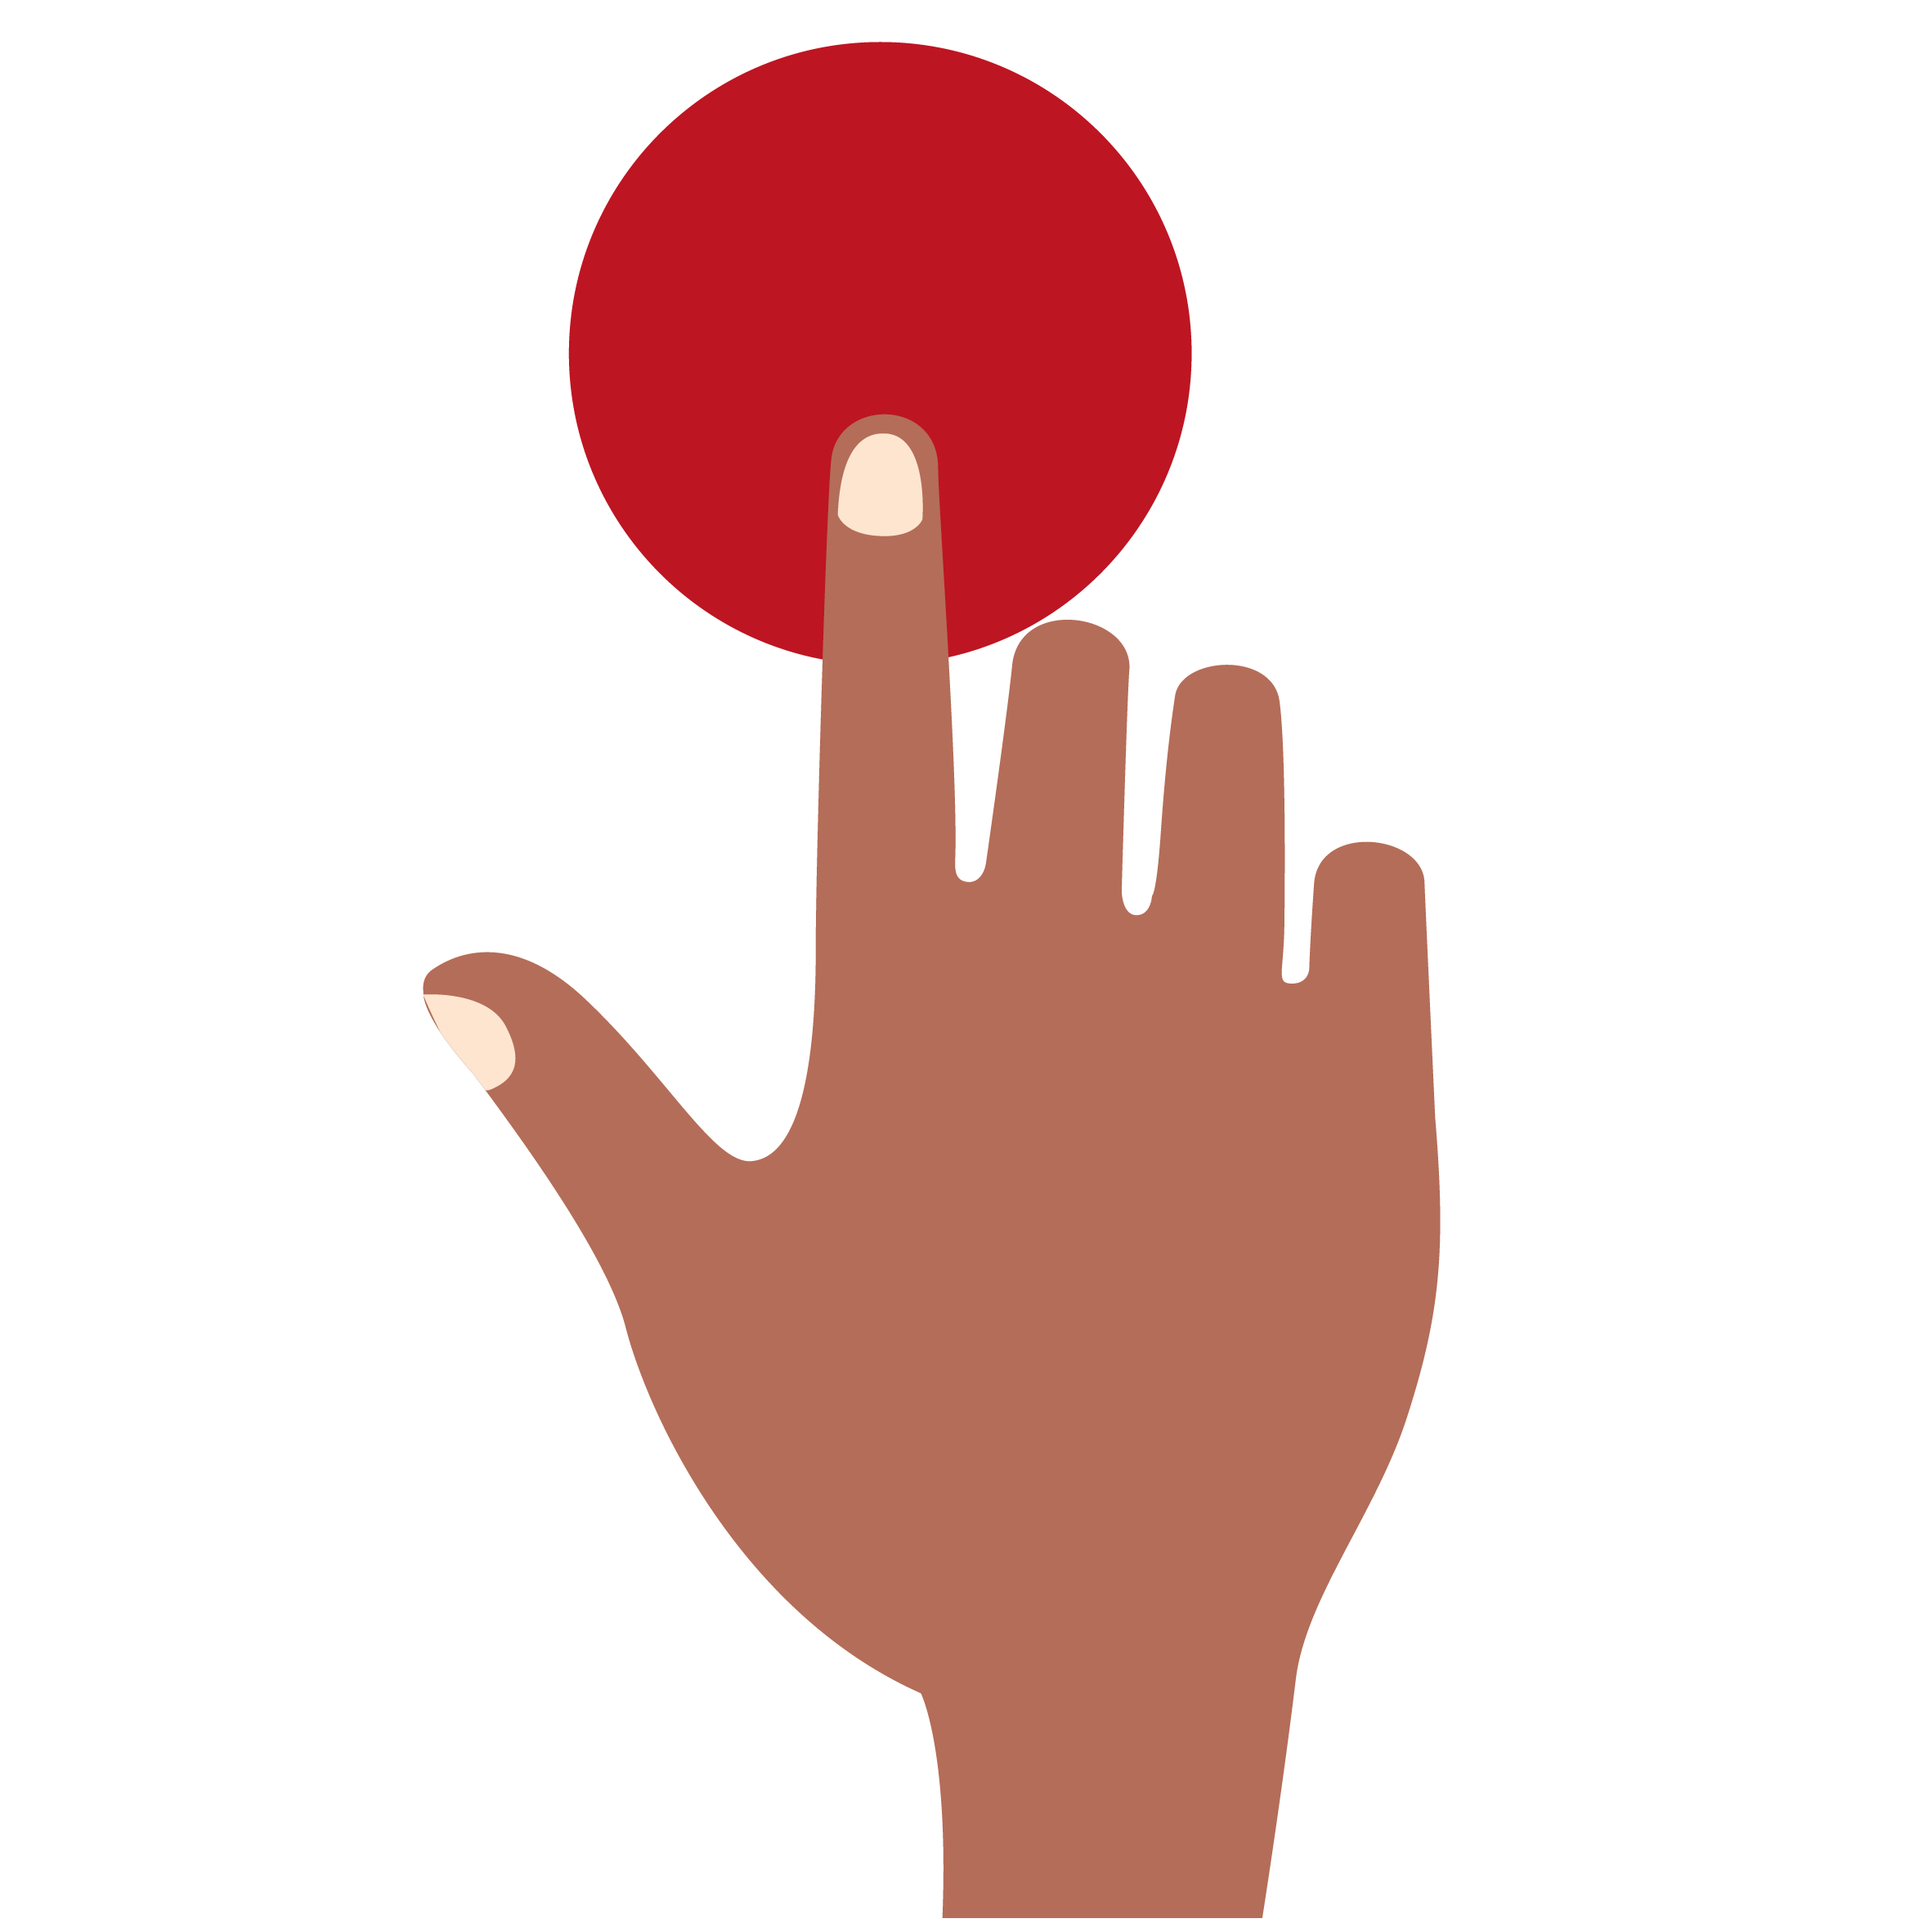 En la imagen puede verse una persona pulsando un botón. Simboliza la interactividad del REA.